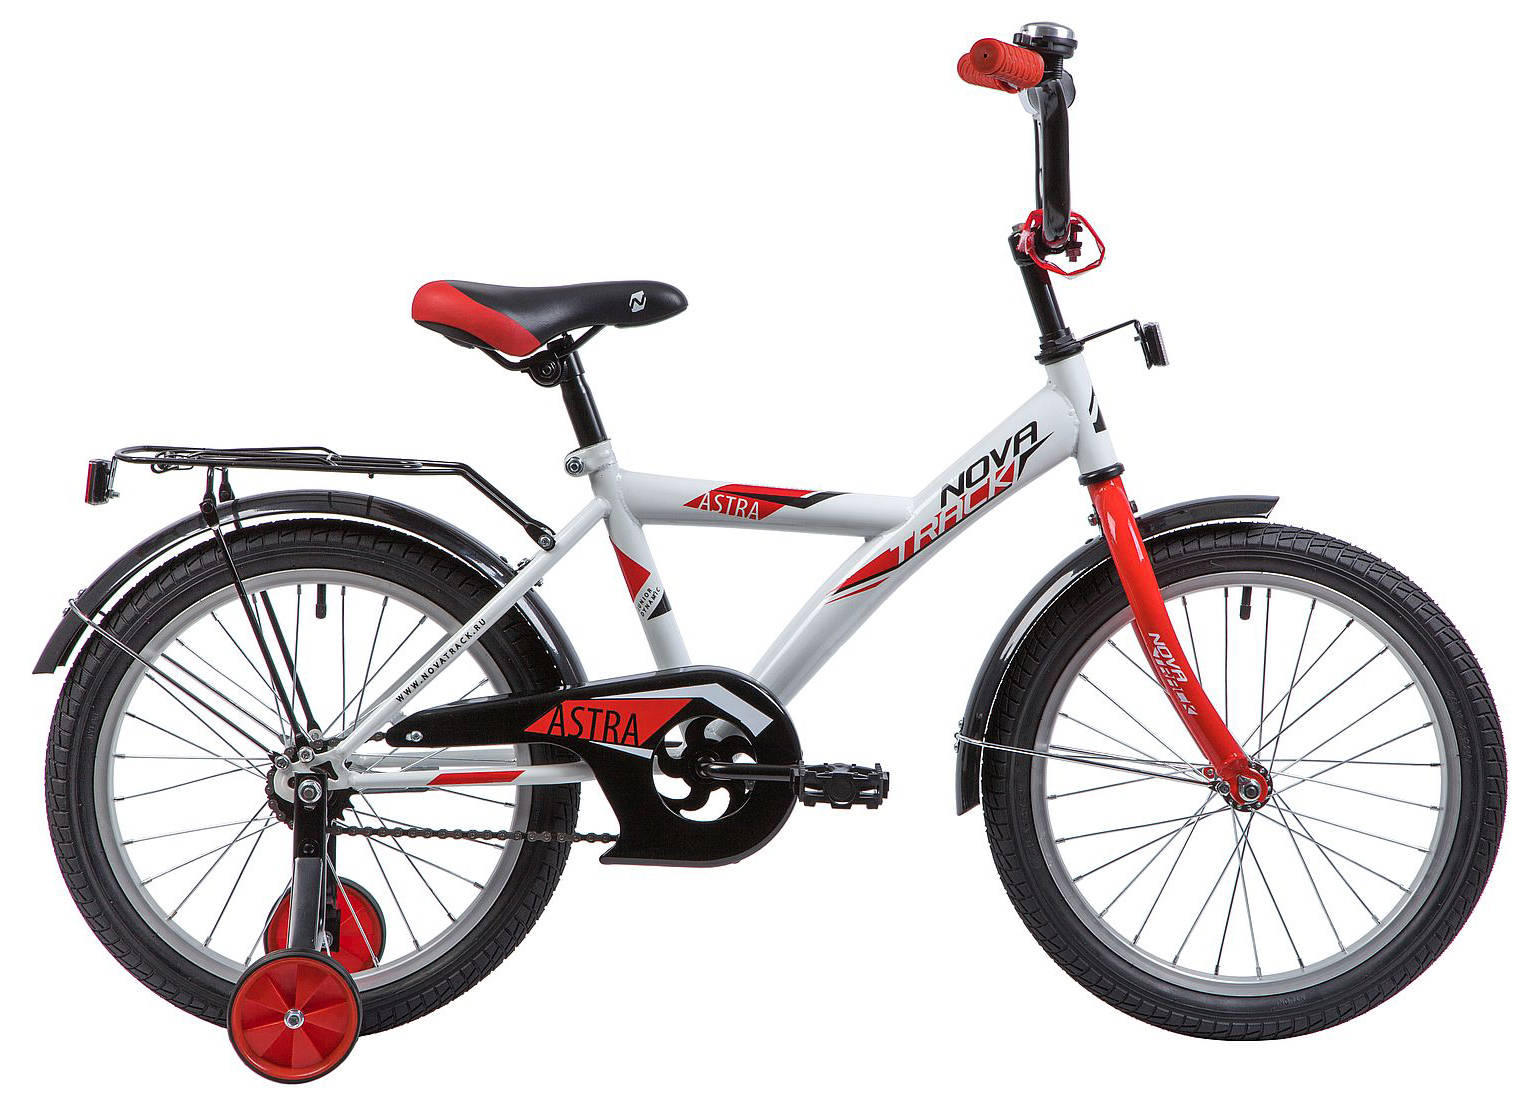  Отзывы о Детском велосипеде Novatrack Astra 18 2019